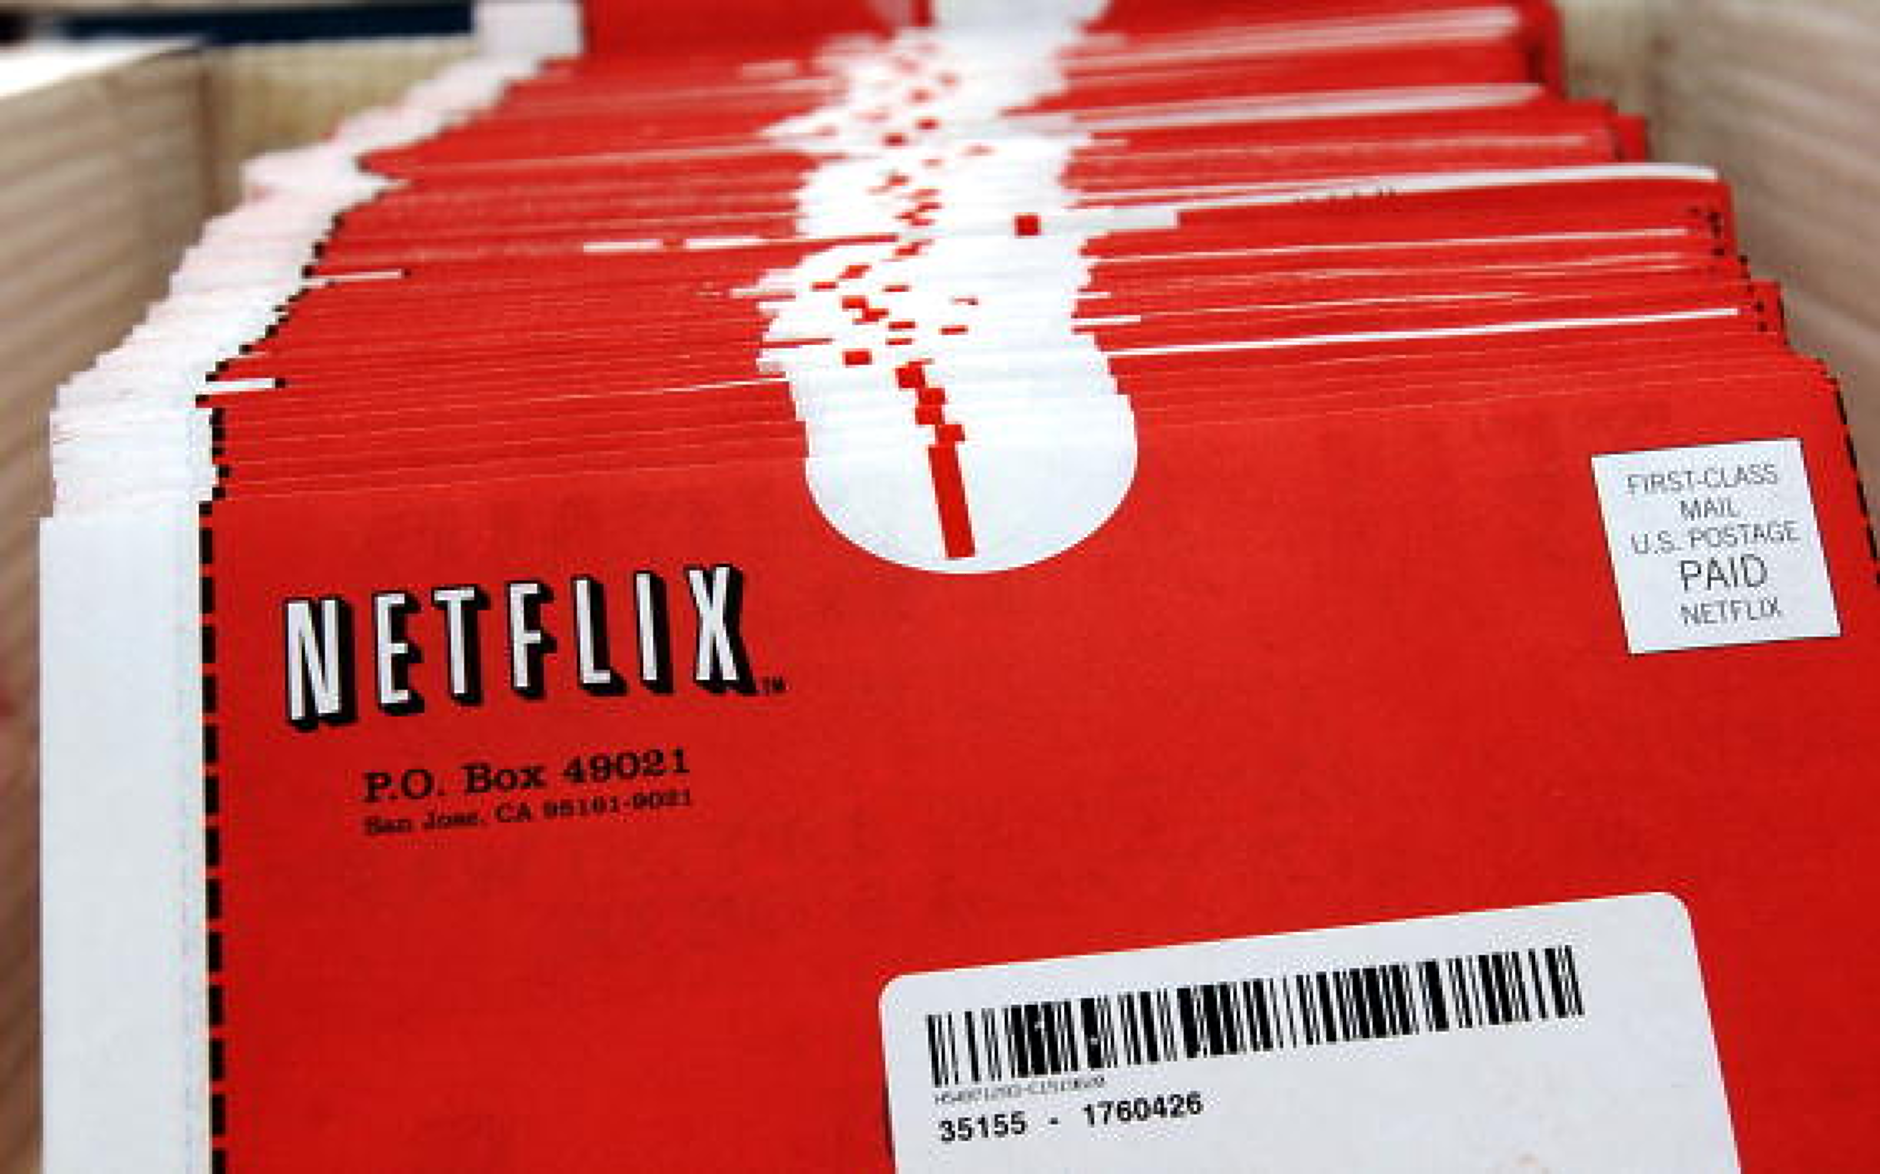 Netflix започна да отменя най-евтините си тарифни планове и пуска по-скъпия абонамент